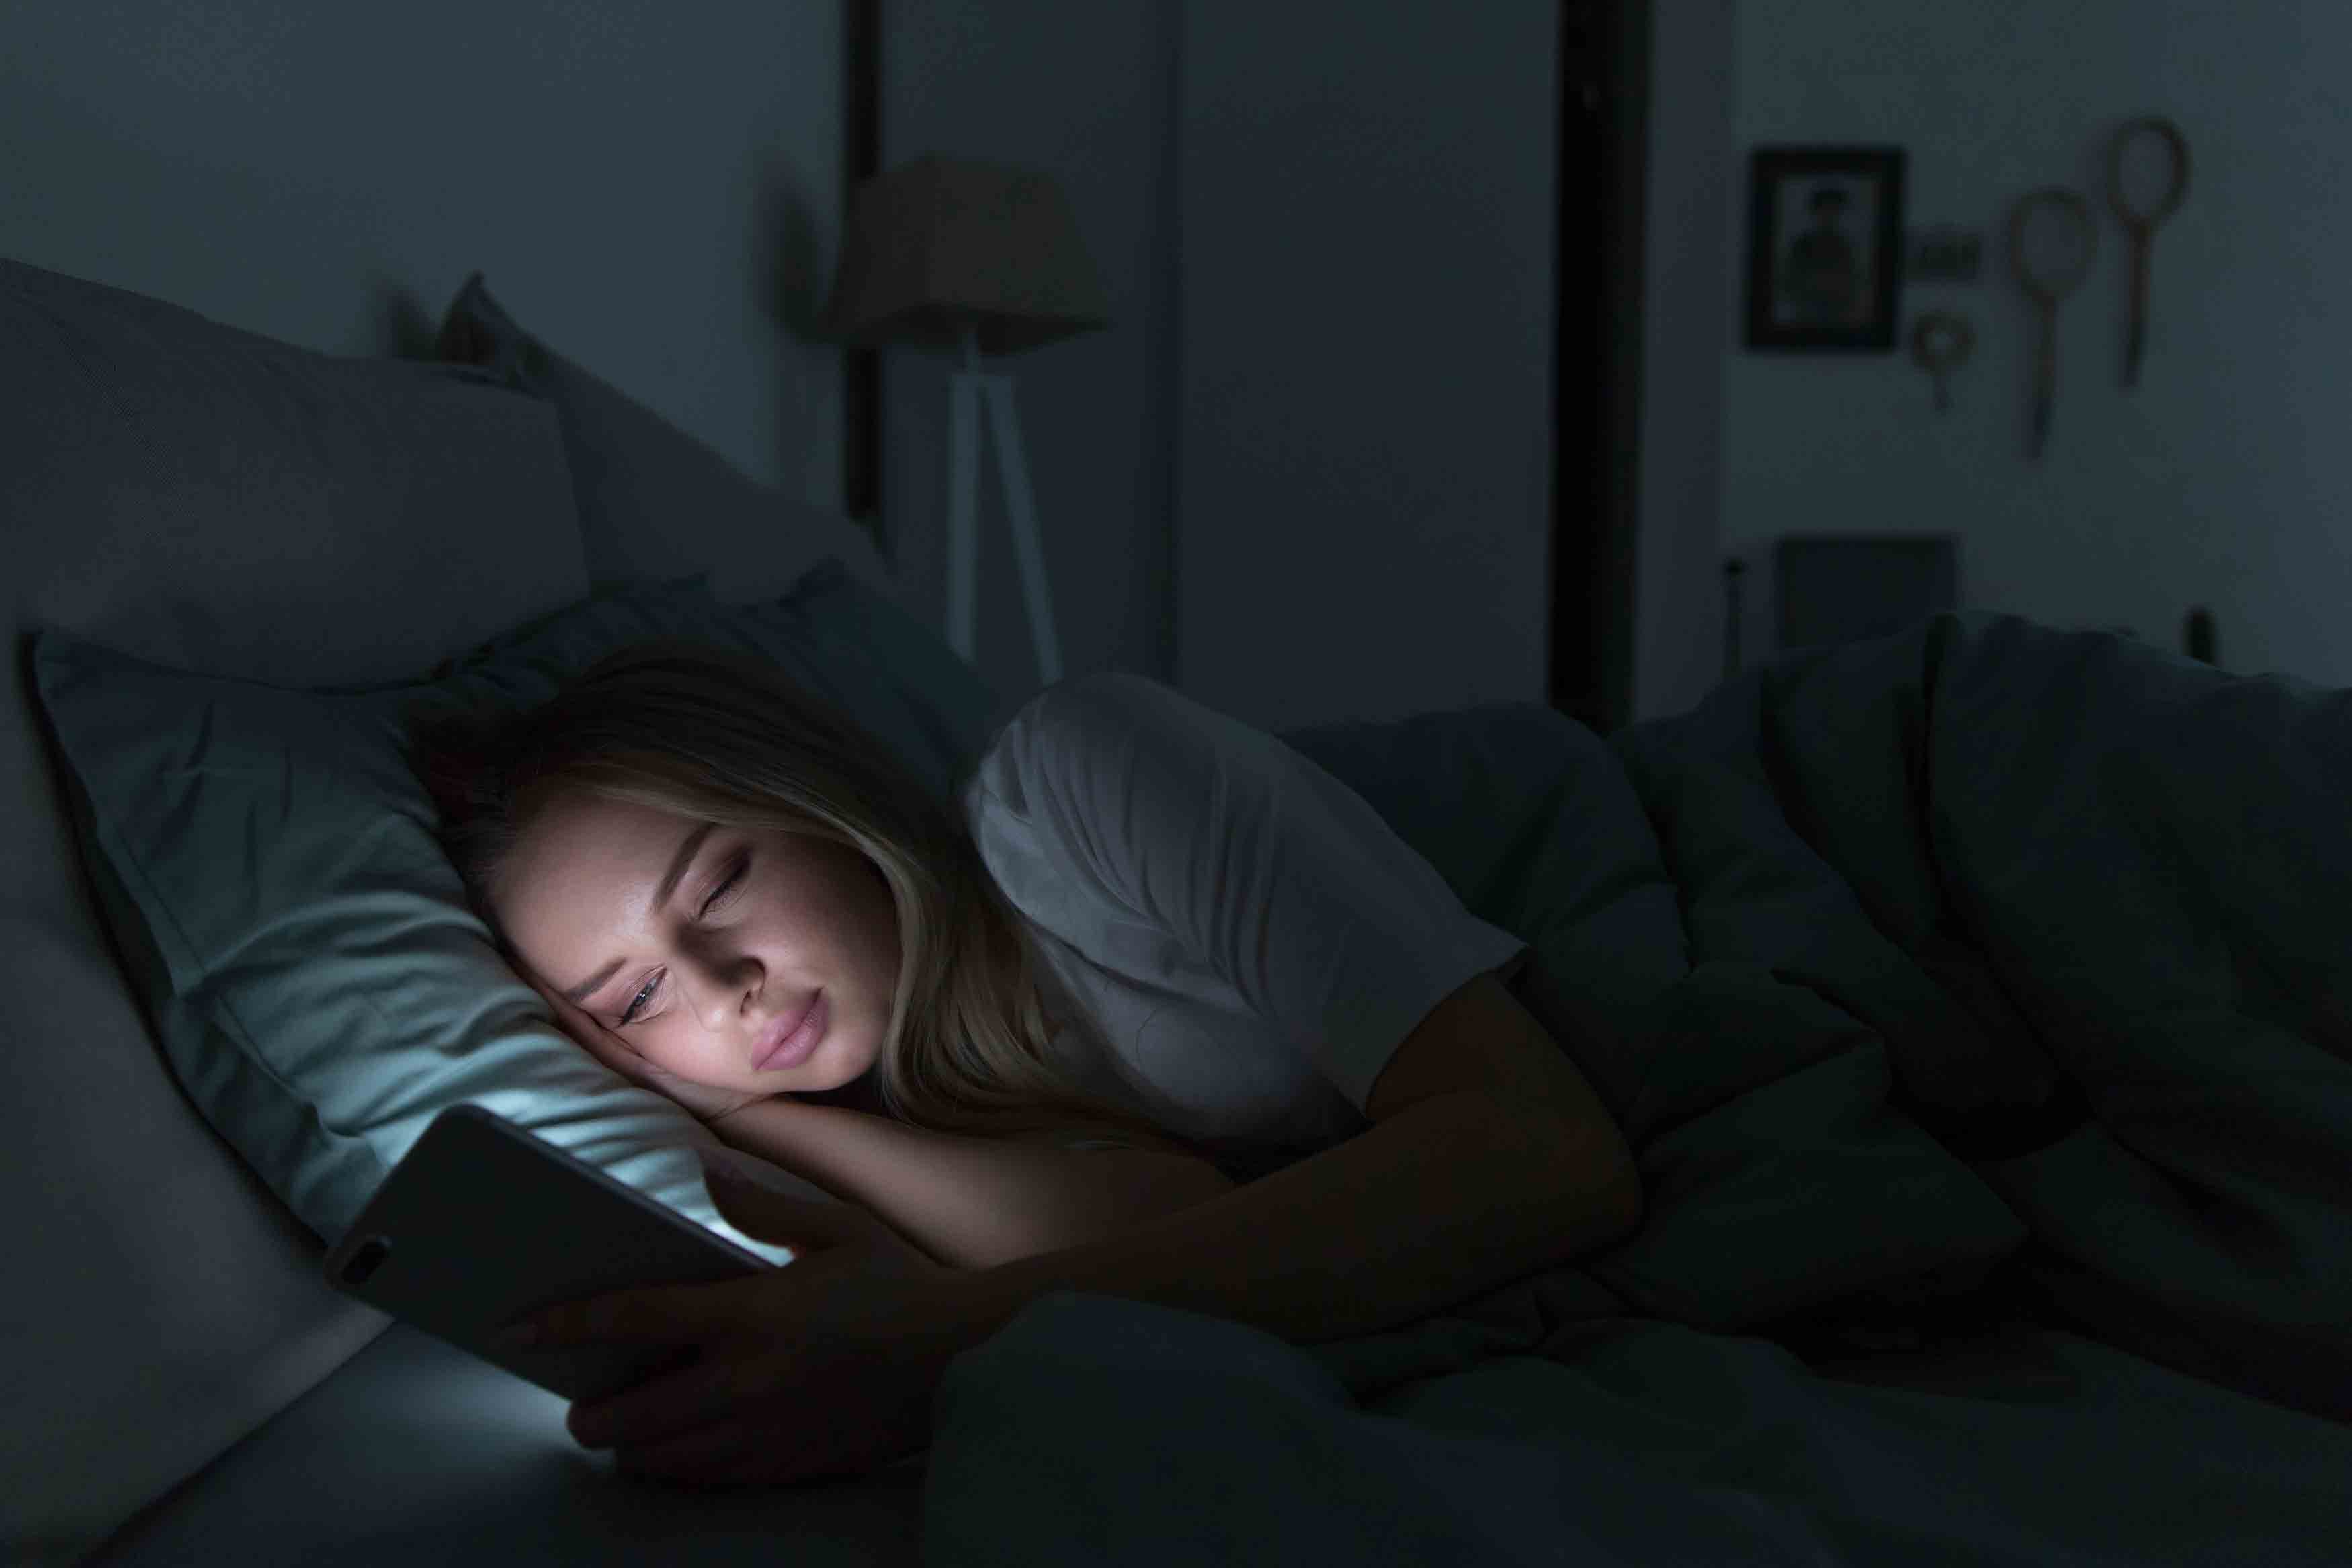 Les écrans, une cause d’insomnie